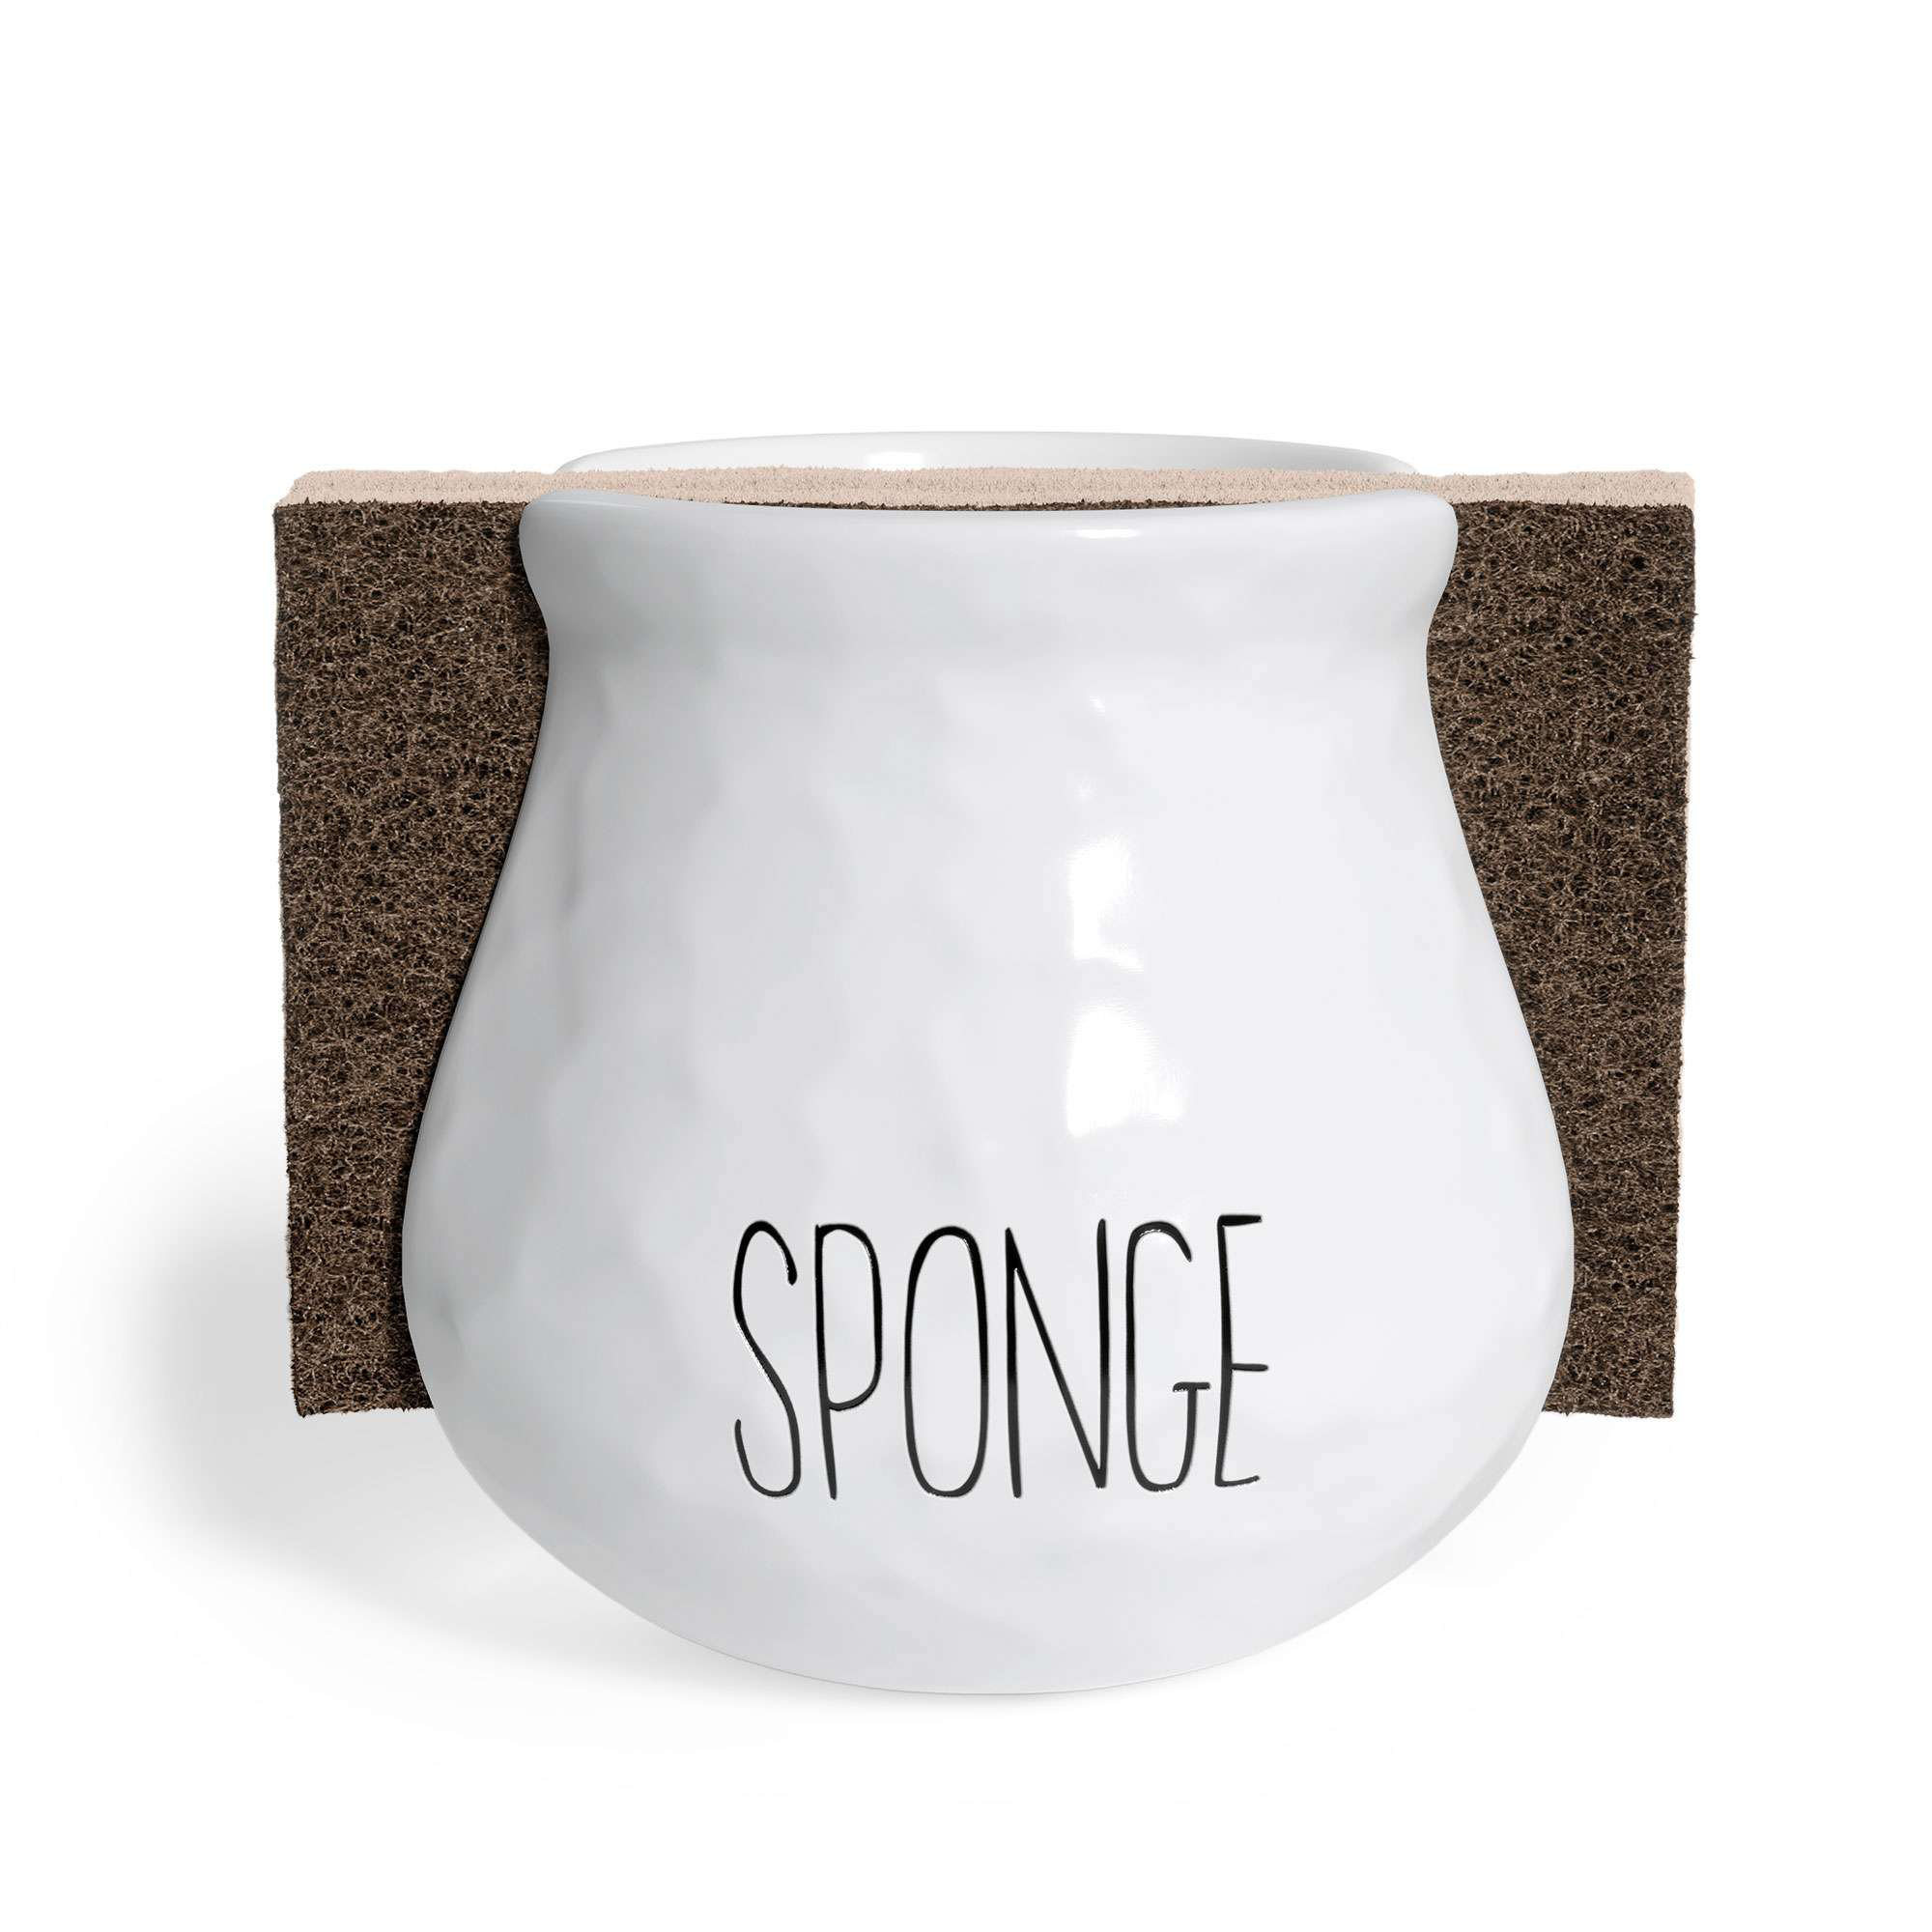 MyGift Ceramic Sponge Holder & Reviews